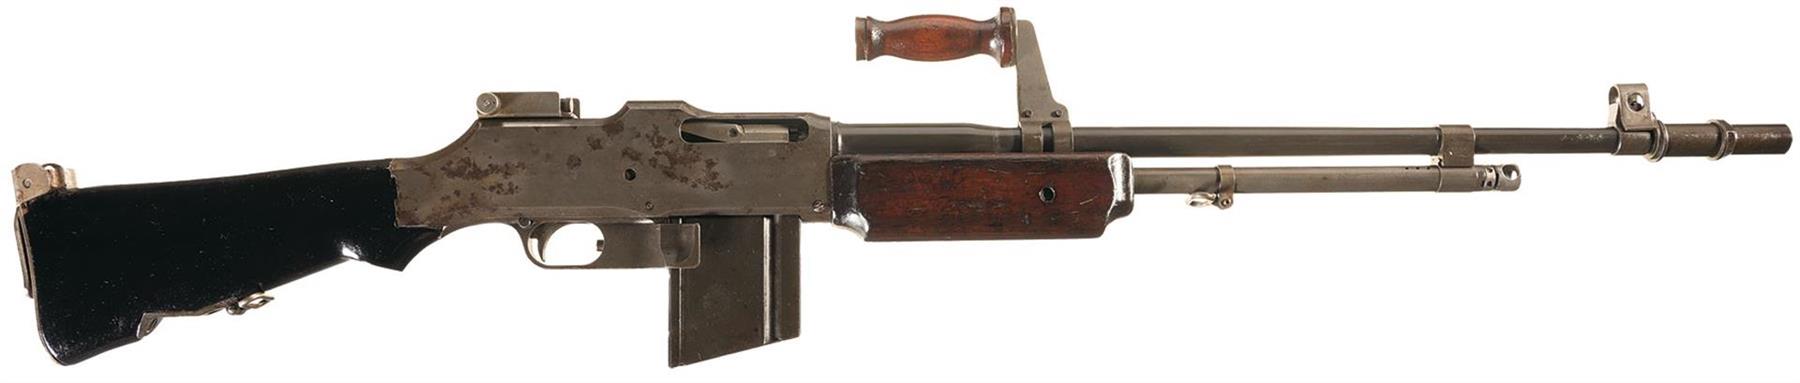 Автоматическая винтовка browning bar m1918 (сша)